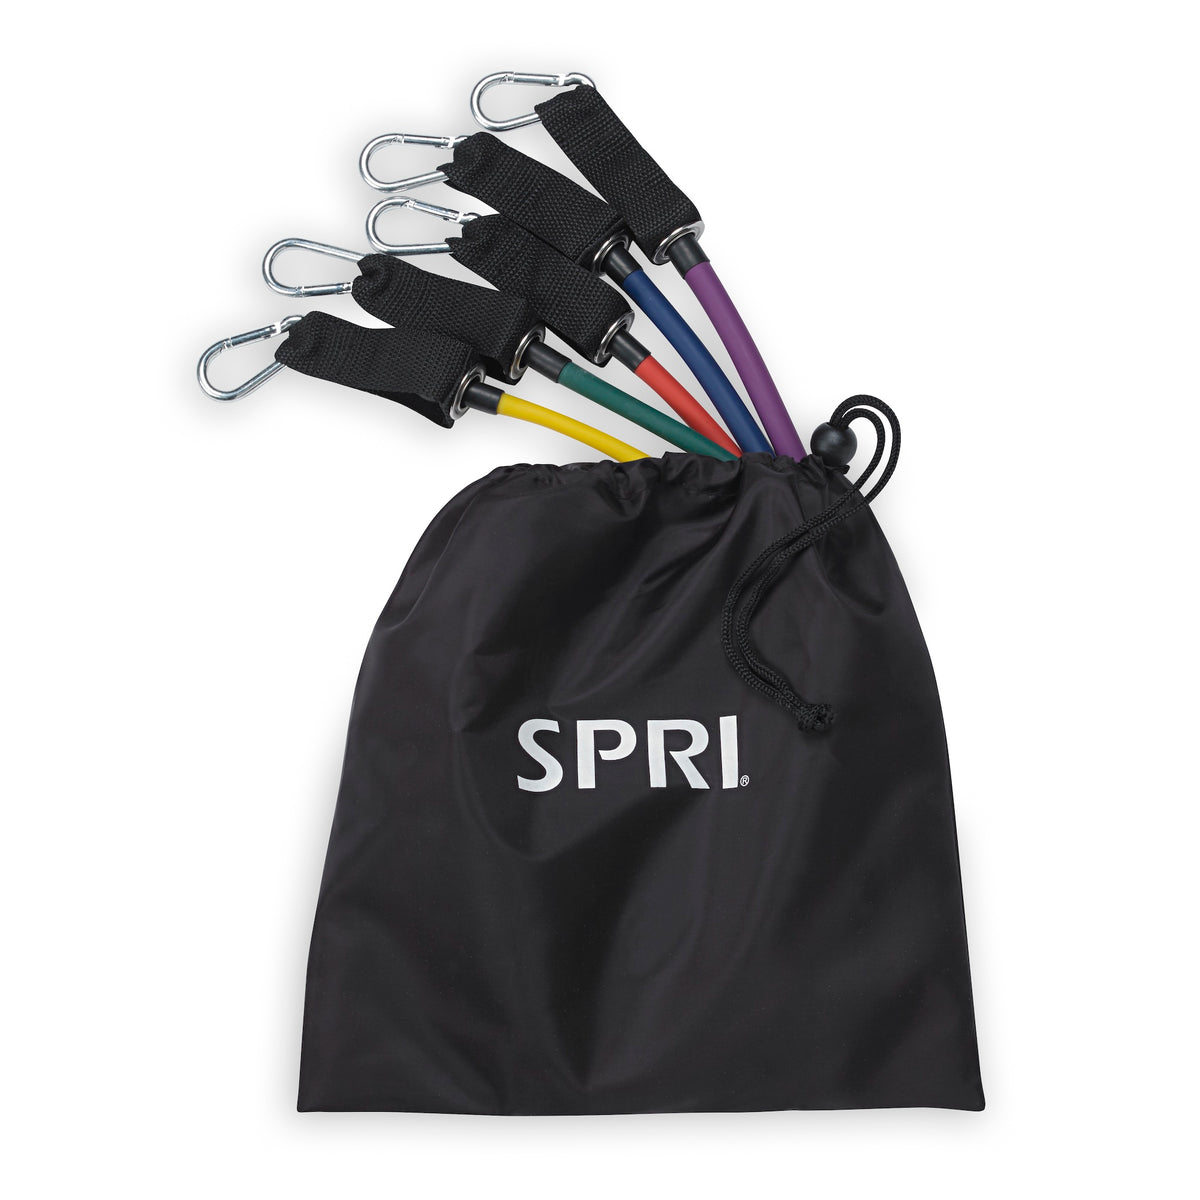 SPRI Total Body Resistance Kit in bag